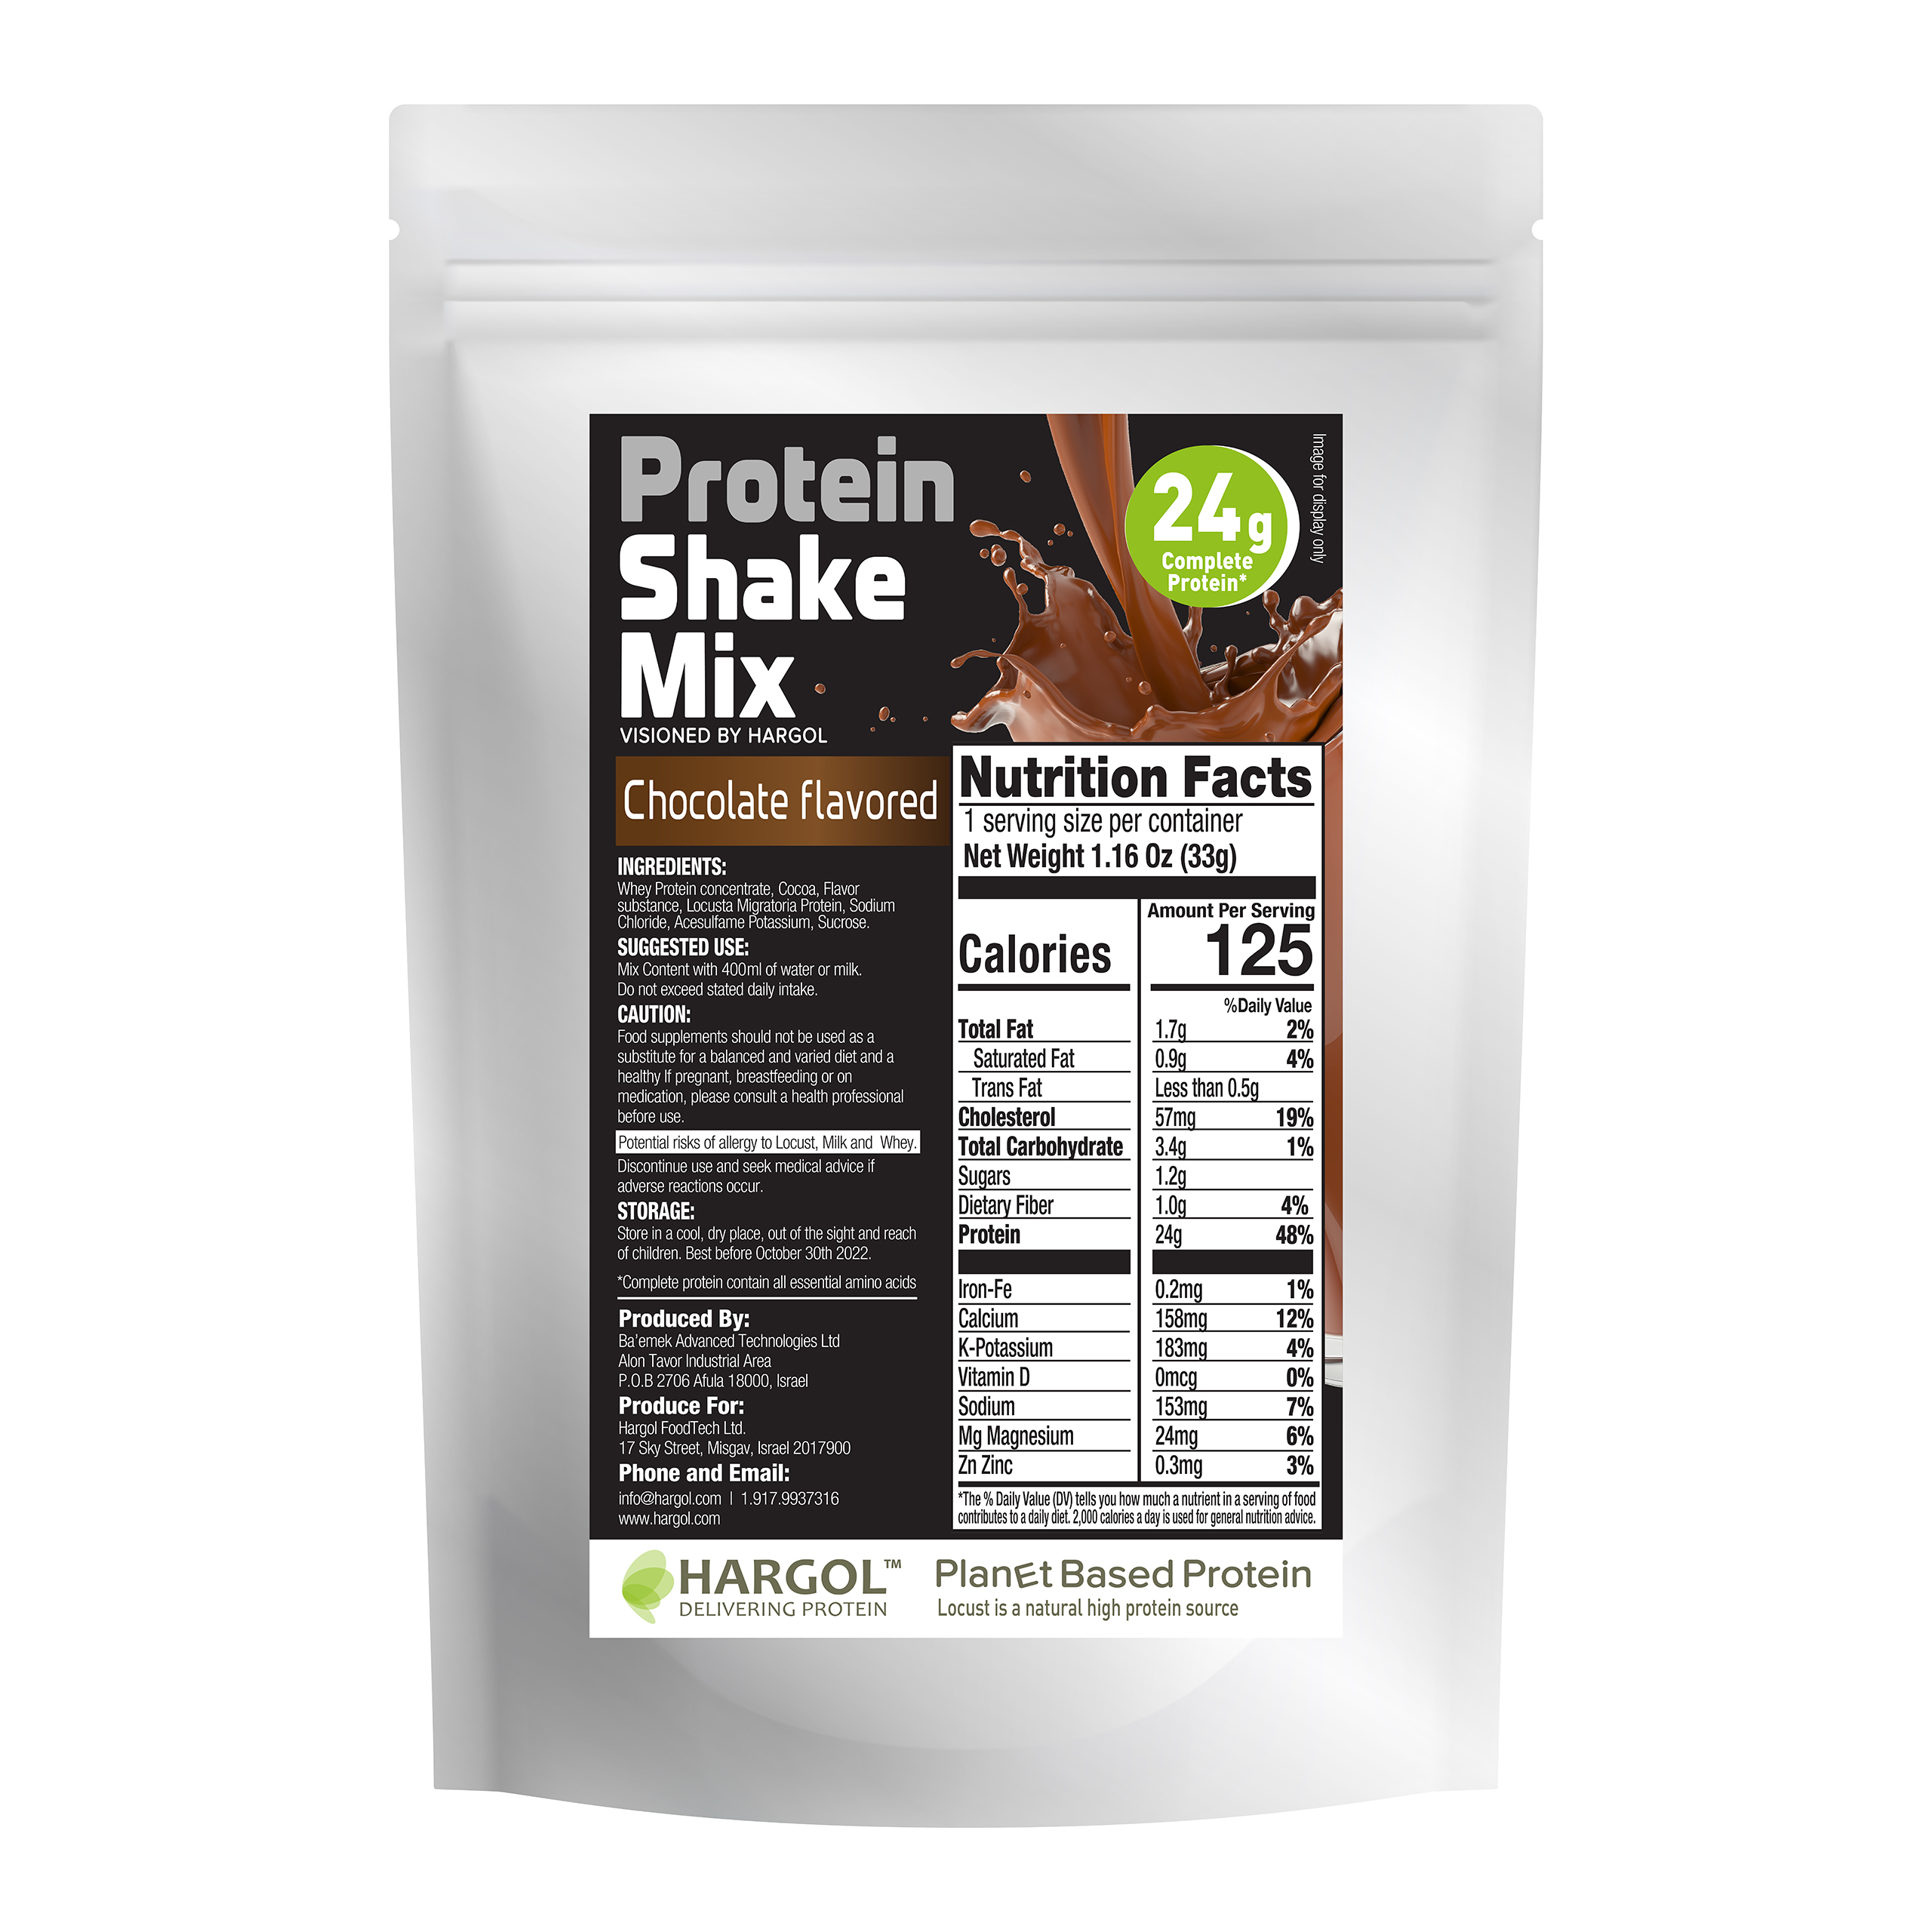 https://biblicalprotein.com/wp-content/uploads/2021/11/Choco-Protein-Shake-TNUVA.jpg